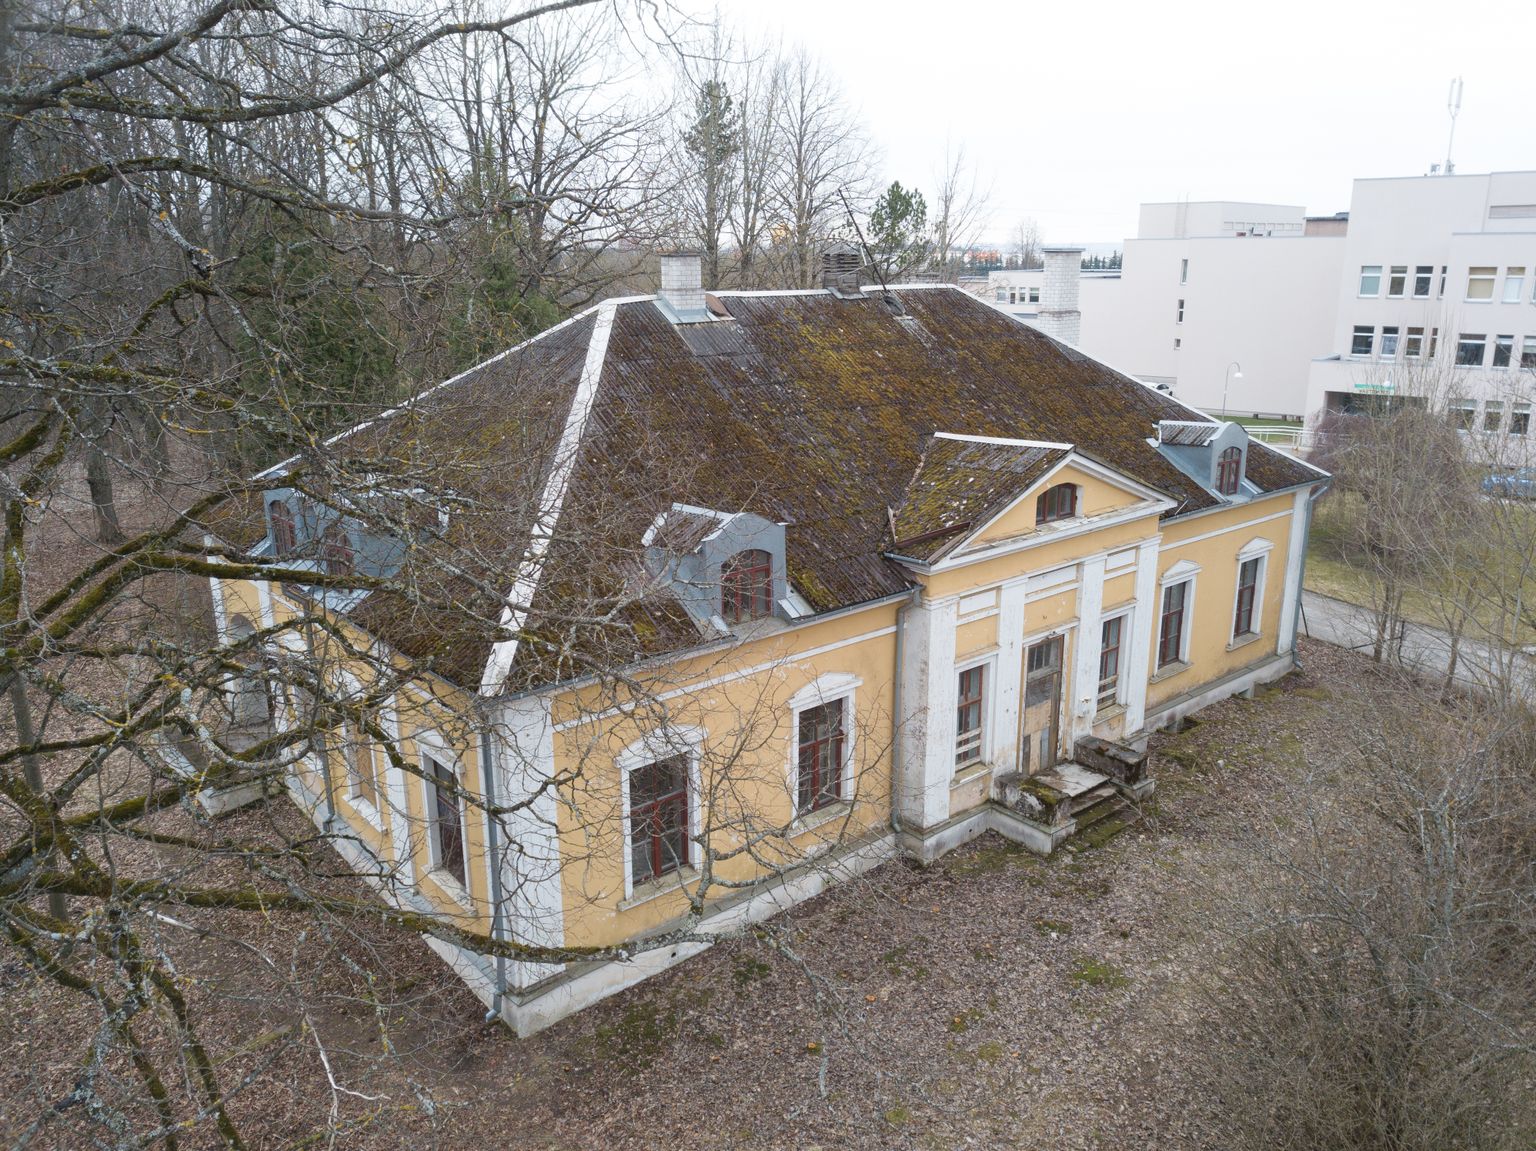 Selles majas praeguse aadressiga Raja 31a elasid aastail 1914–1918 Aino ja Oskar Kallas oma lastega.